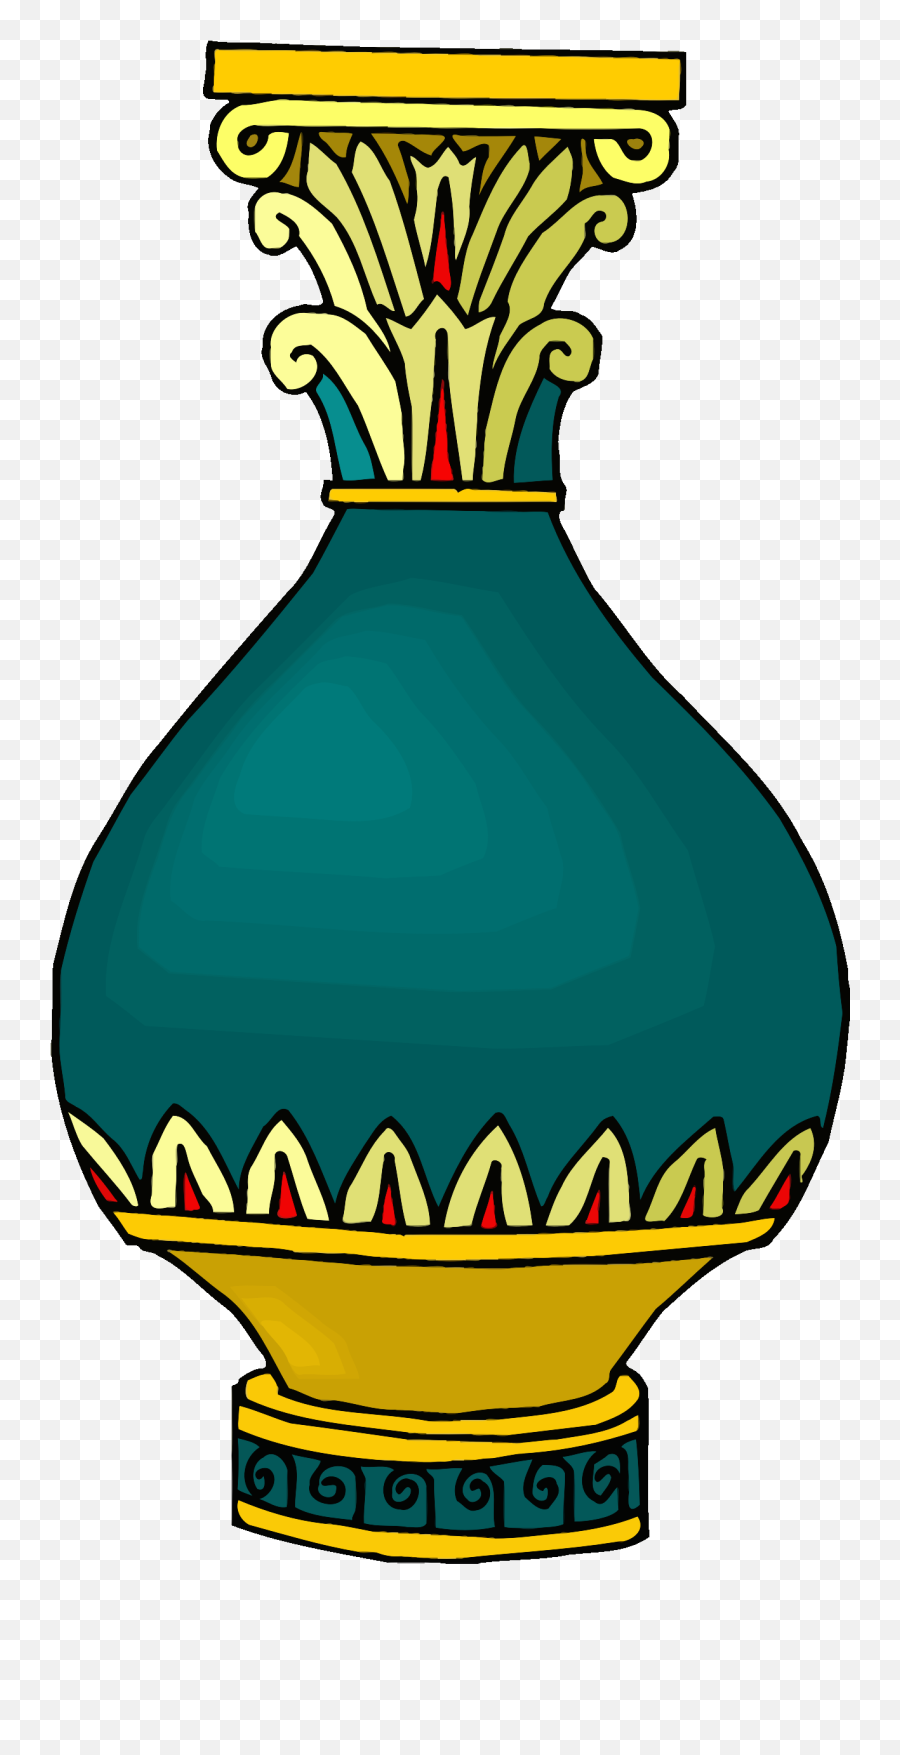 Vase 14 - Clipart Image Of Vase Emoji,Vase Clipart